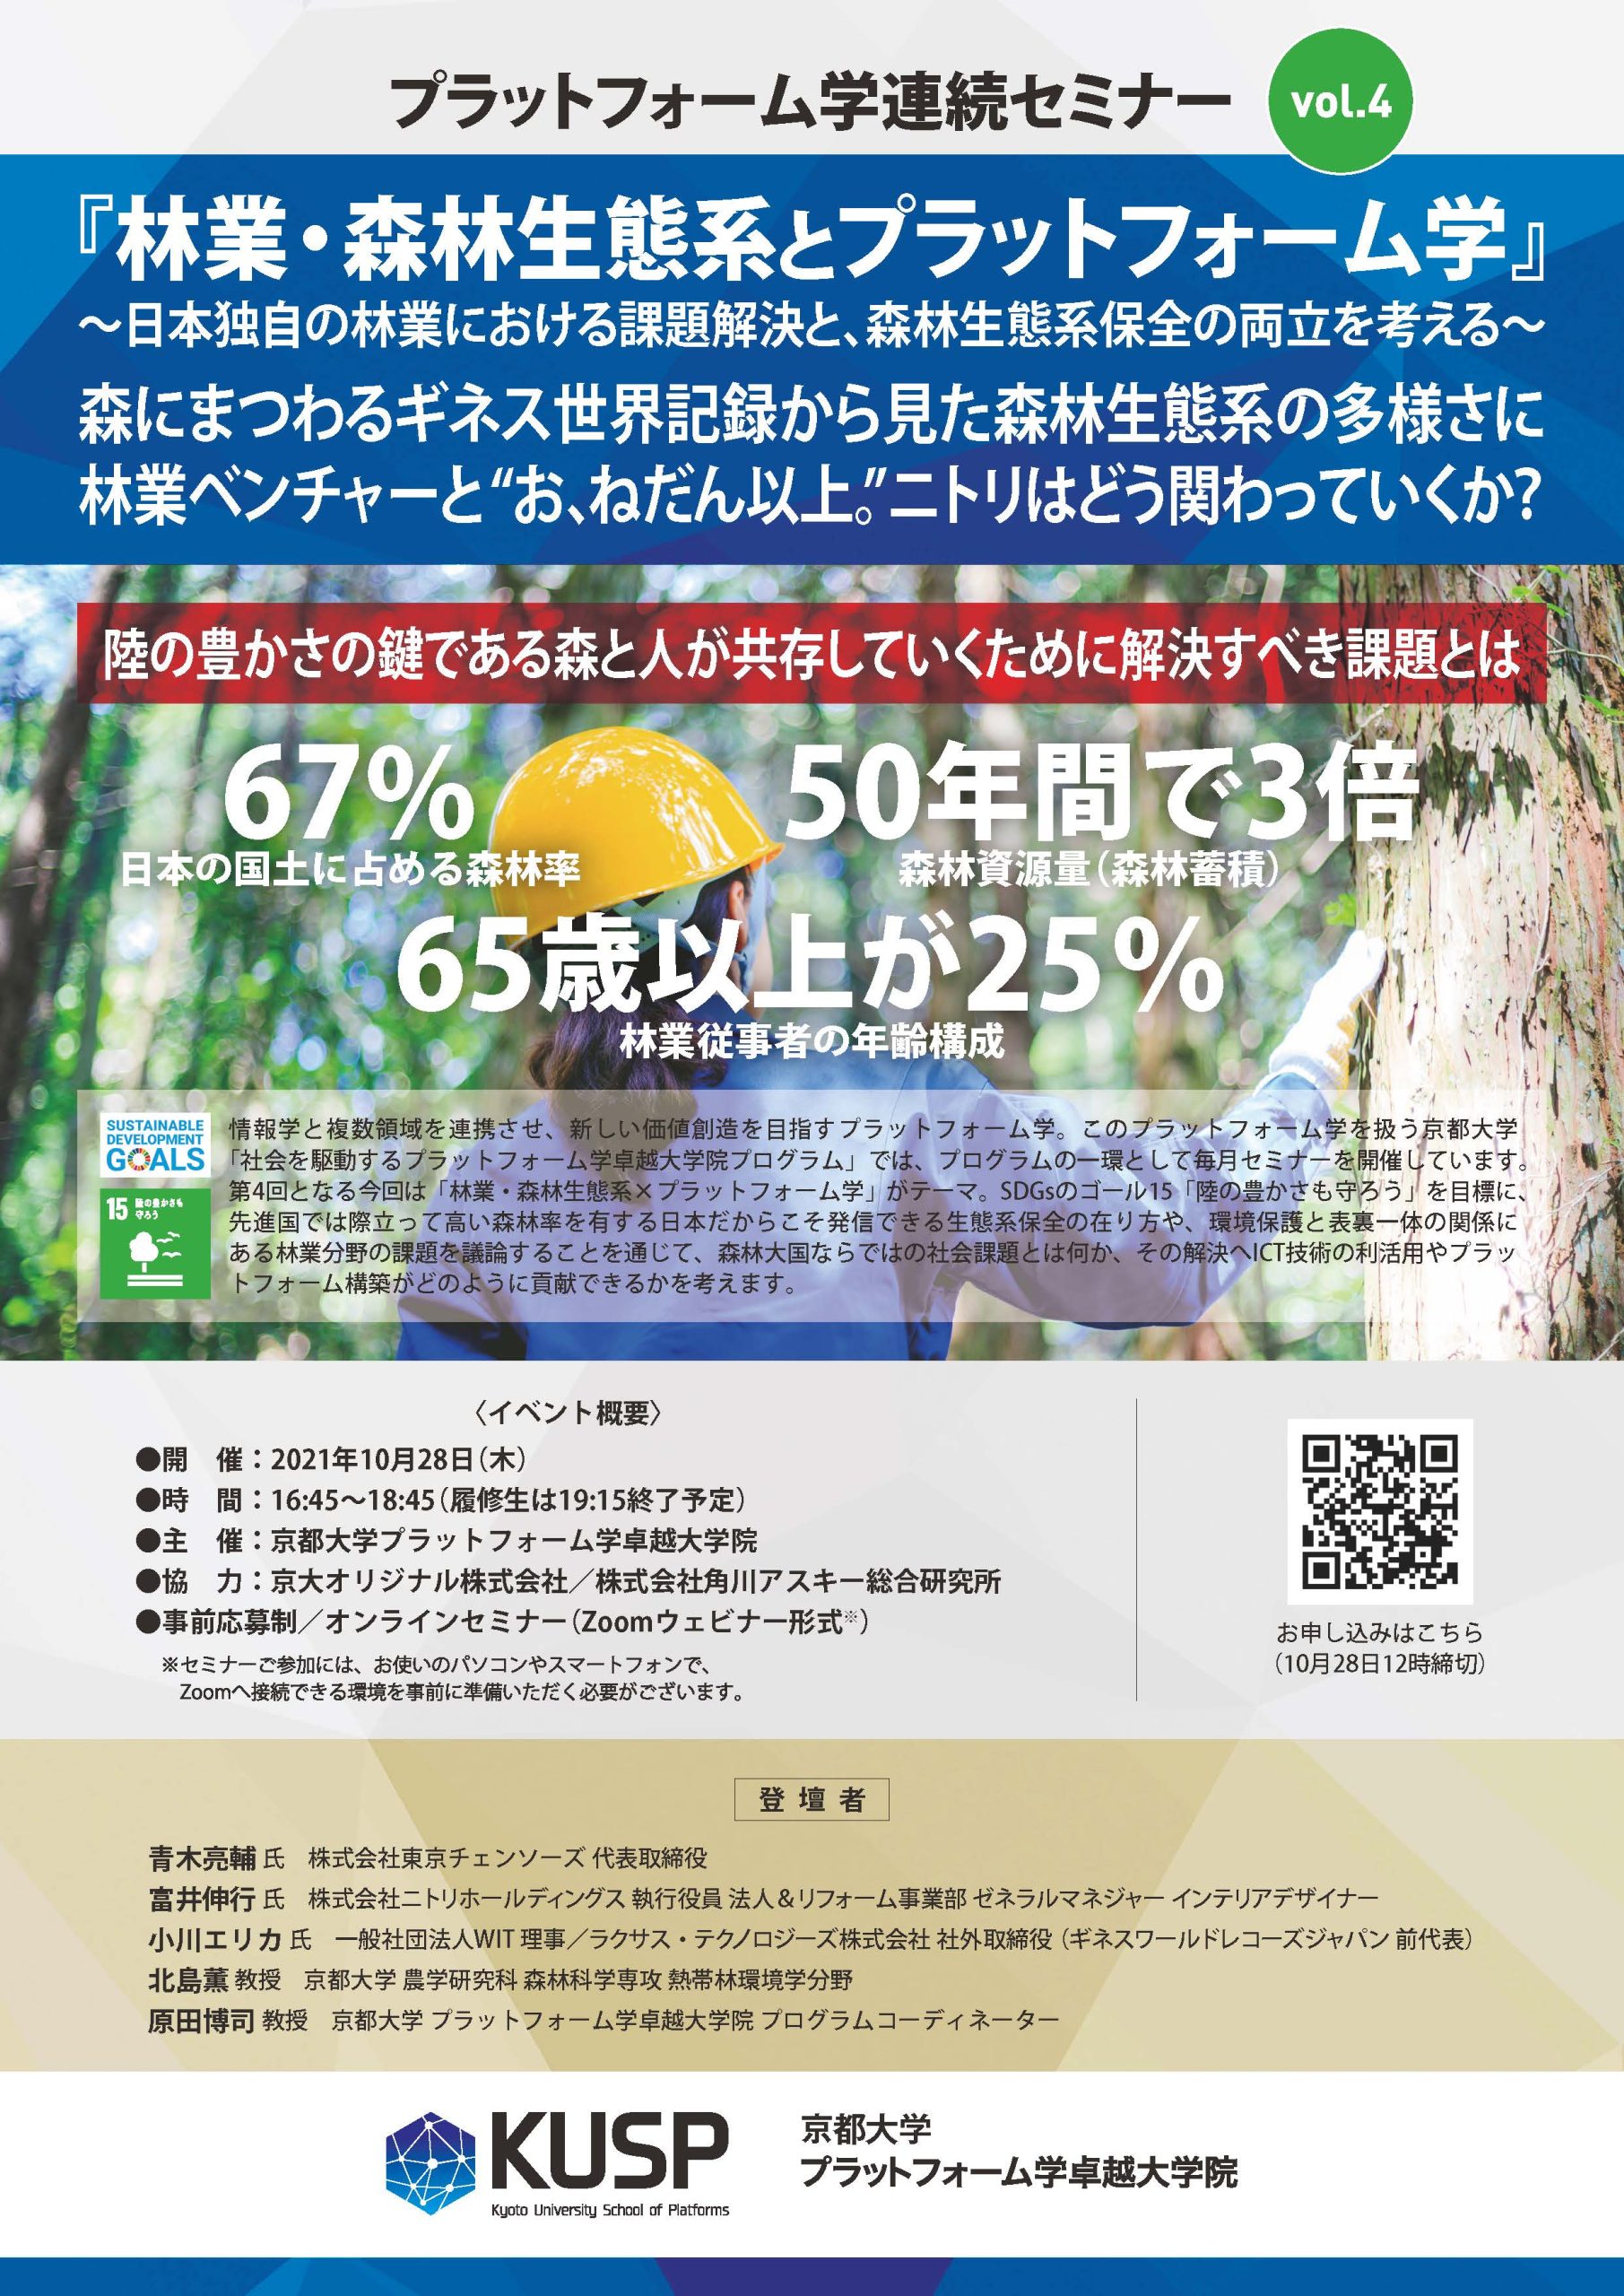 【2021年10月28日】プラットフォーム学連続セミナー　Vol. 4 <br>『林業・森林生態系とプラットフォーム学』<br> 〜日本独自の林業における課題解決と、森林生態系保全の両立を考える〜